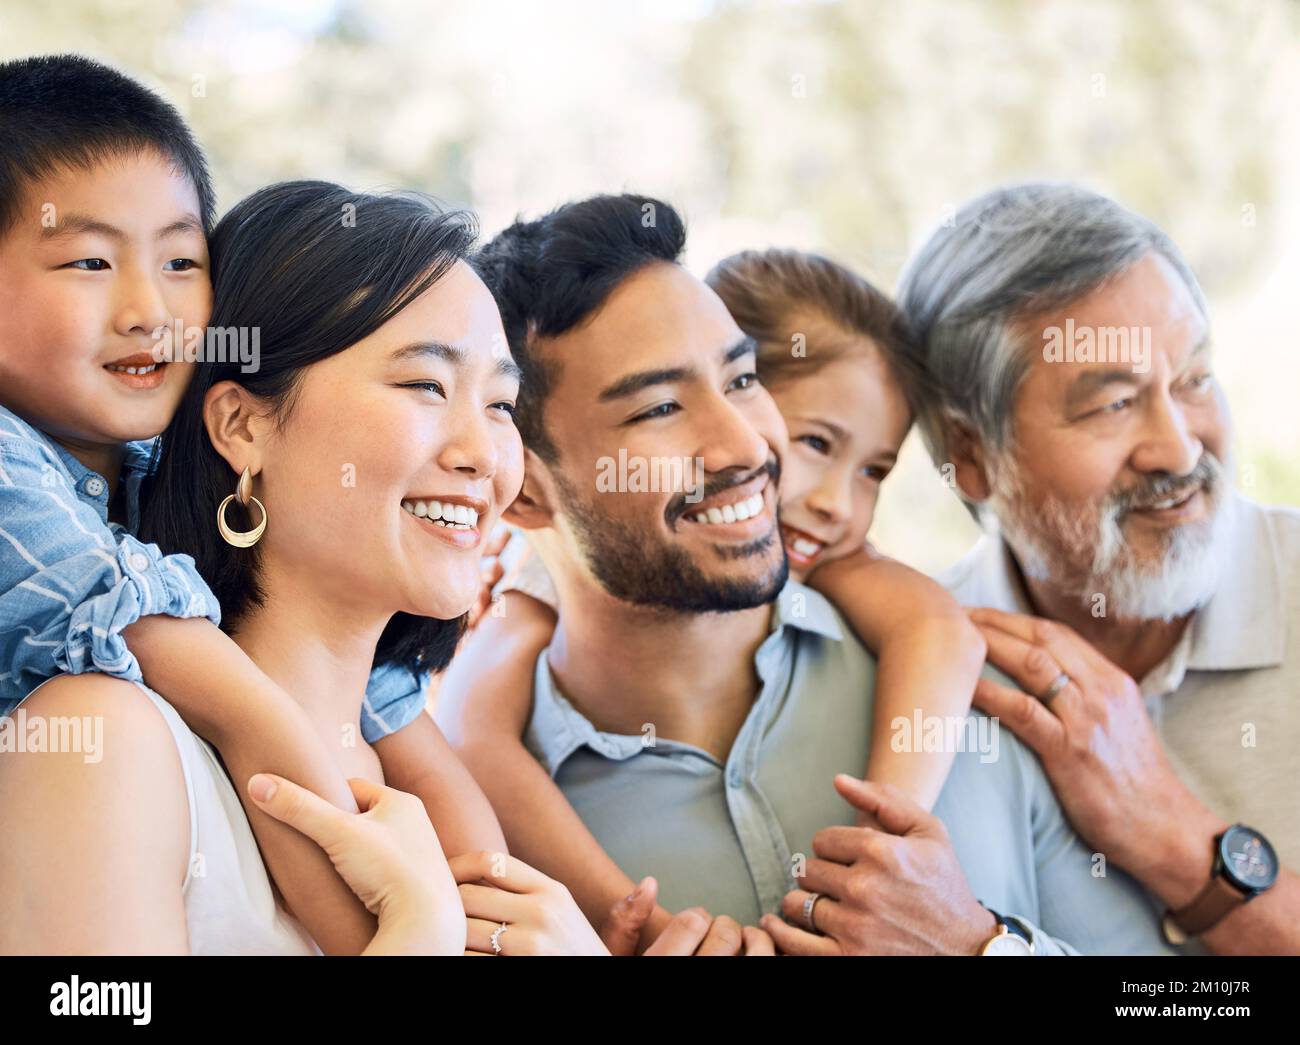 Die Zeit mit der Familie ist Gold wert. Eine glückliche Familie, die Zeit zusammen in einem Garten verbringt. Stockfoto